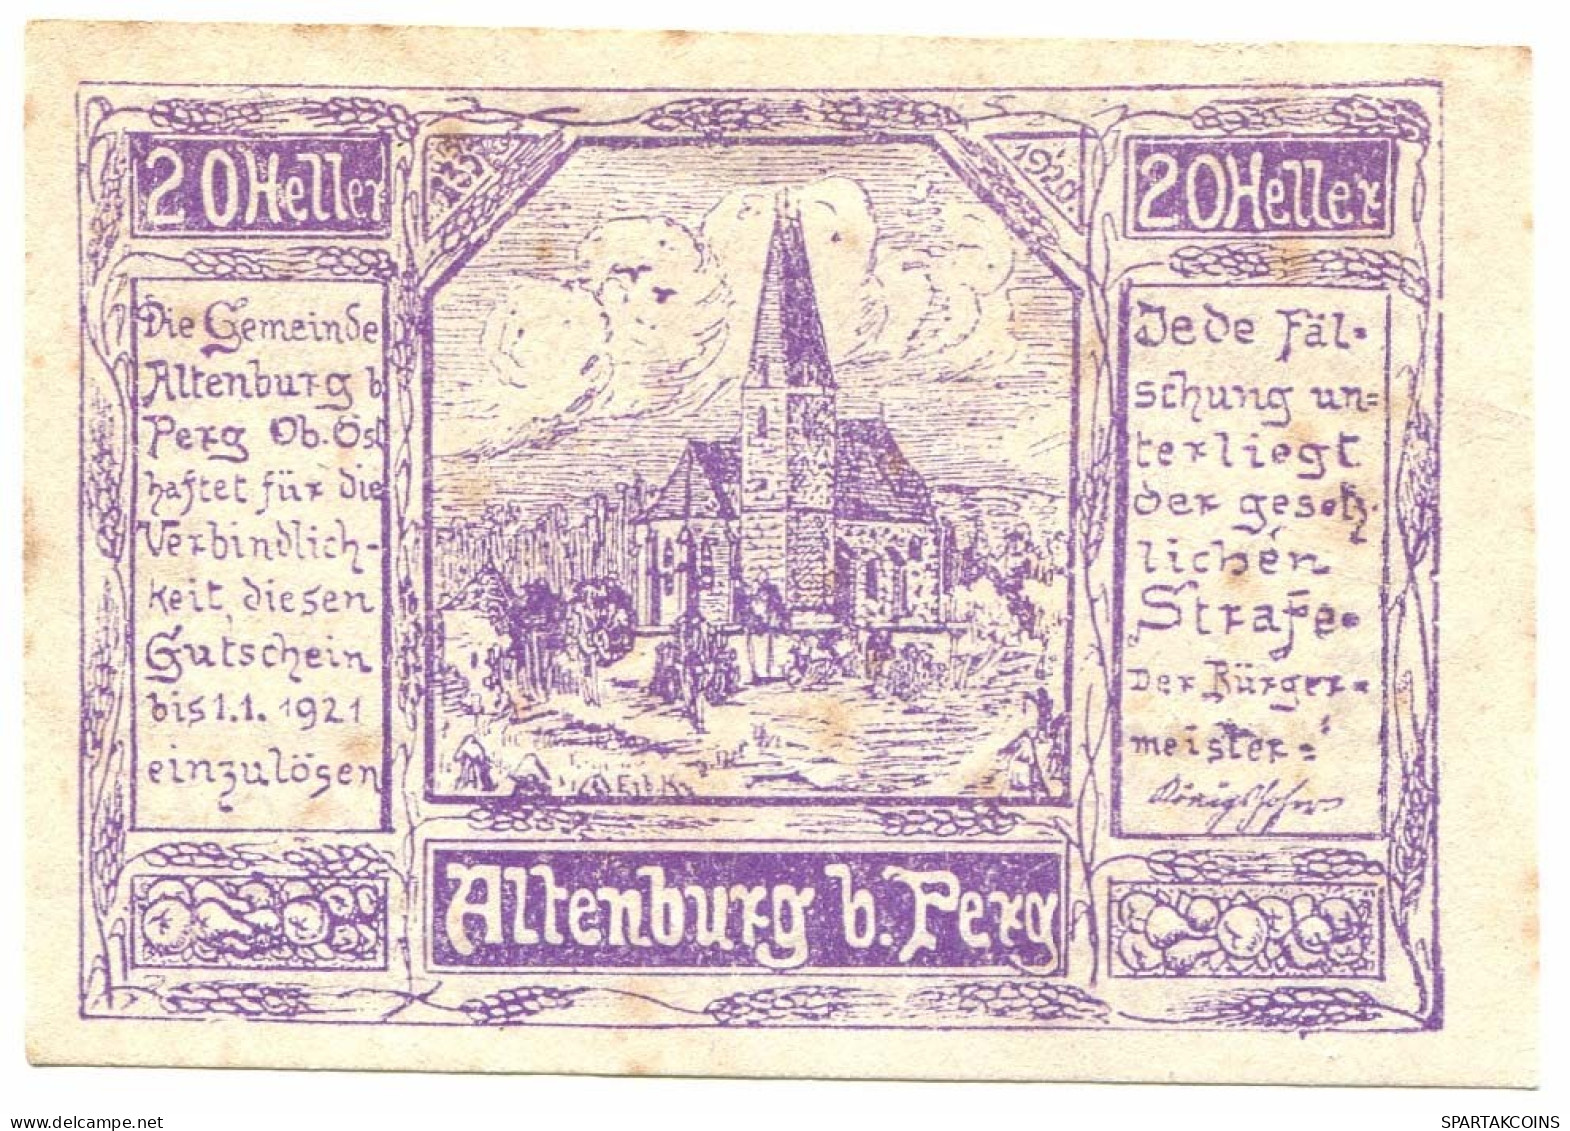 20 Heller 1921 PERG Österreich UNC Notgeld Papiergeld Banknote #P10253 - [11] Lokale Uitgaven